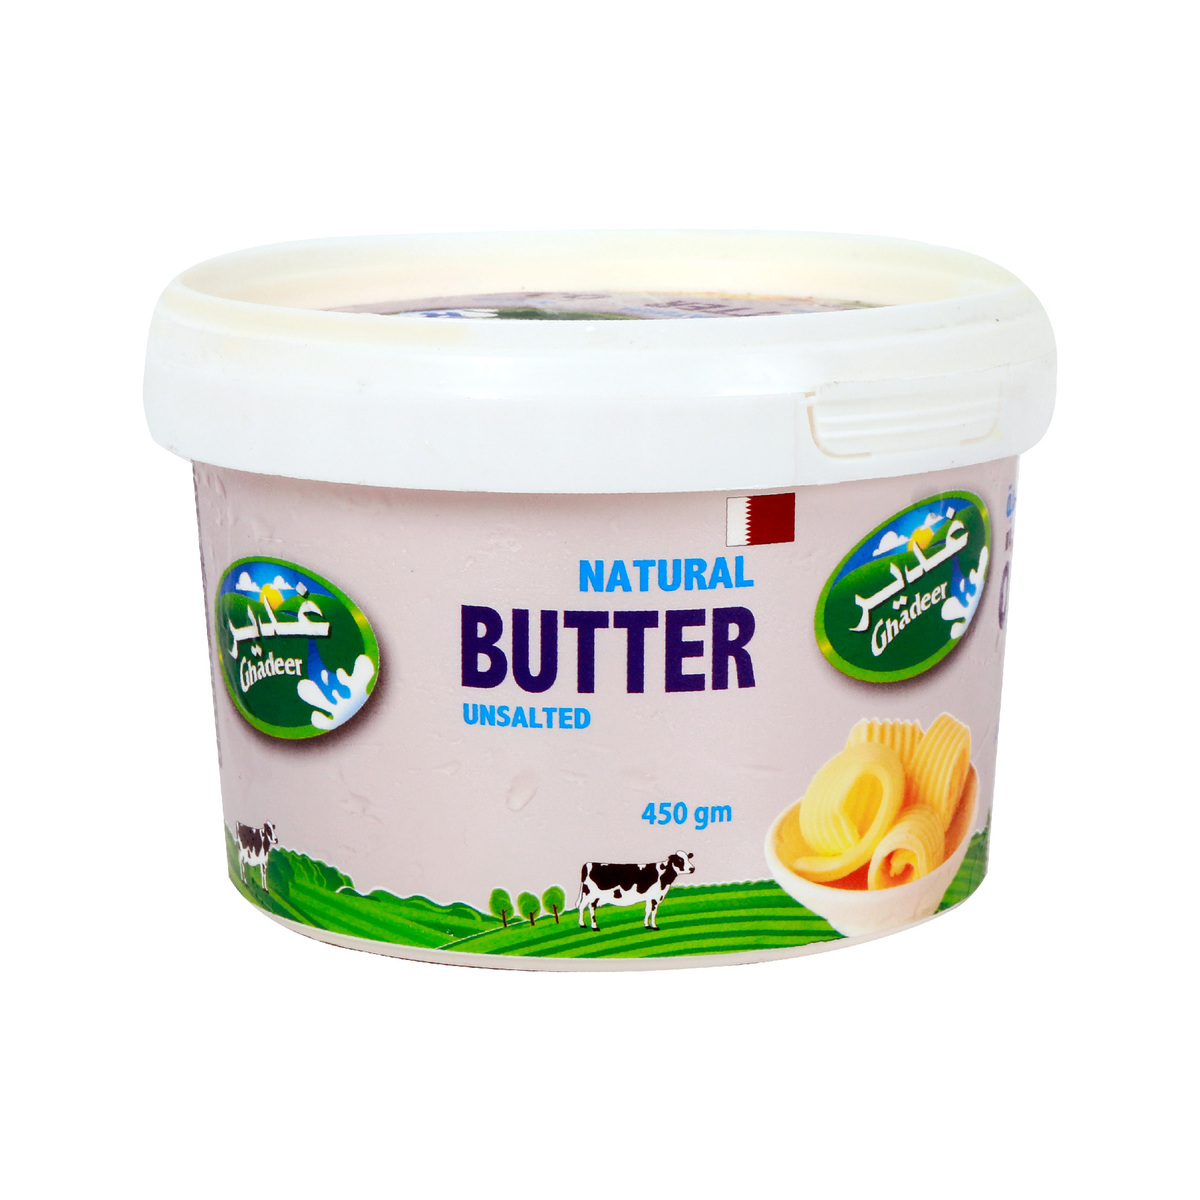 Ghadeer Natural Butter Unsalted 450g